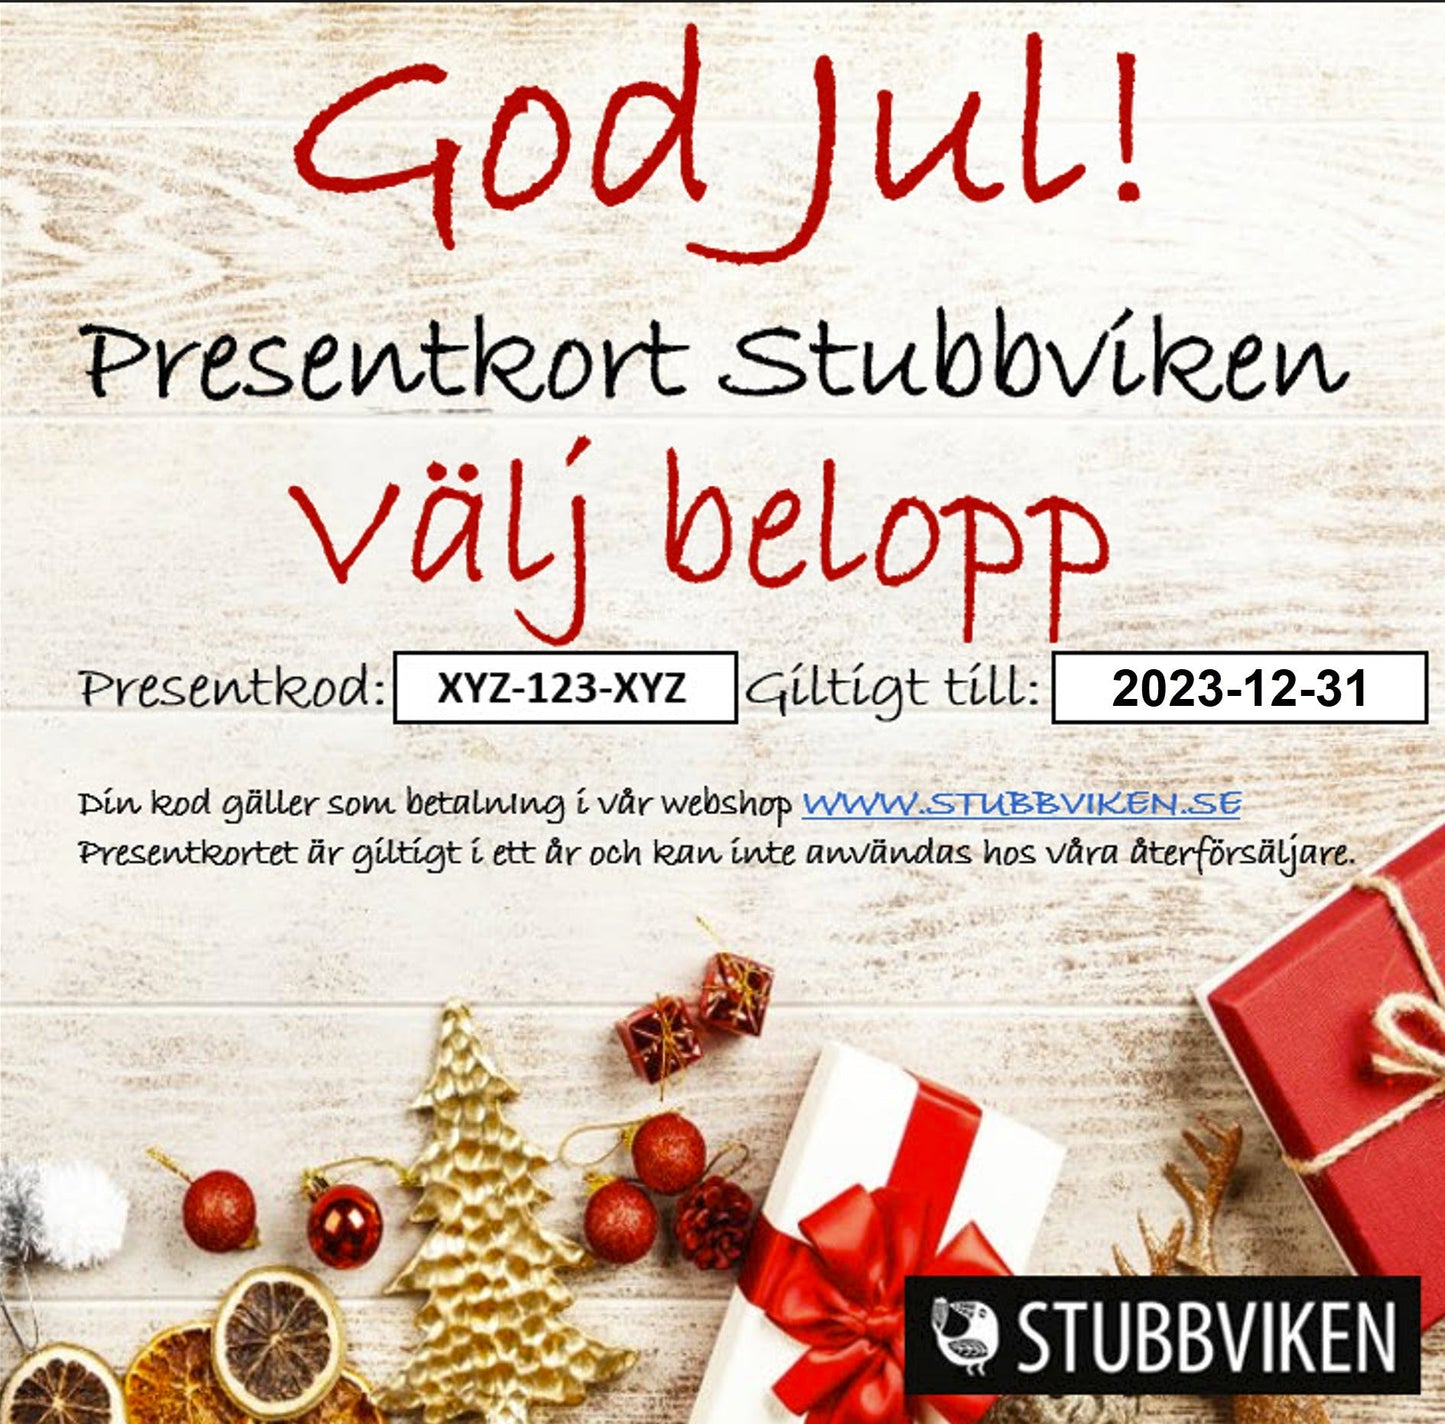 Presentkort Stubbviken - Skickas till köparens e-mail adress